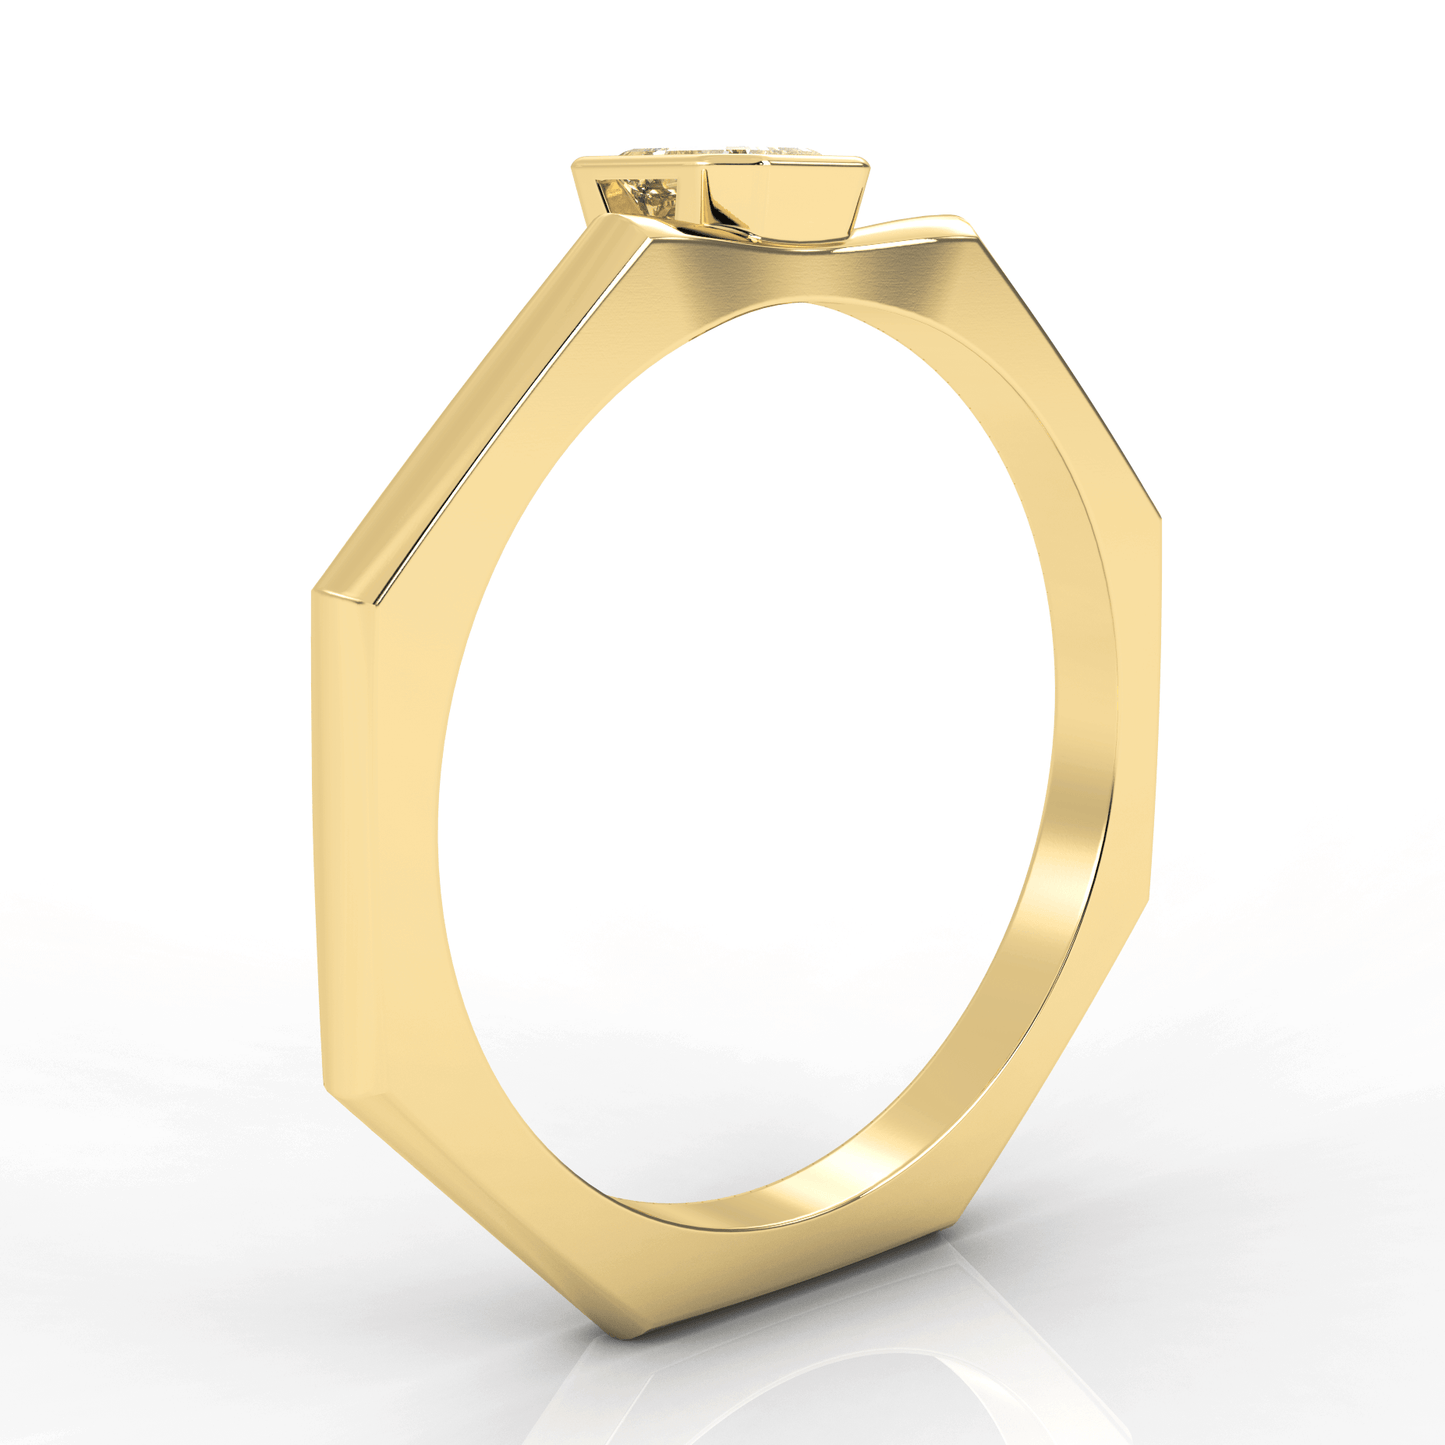 E Ring in 14k Gold